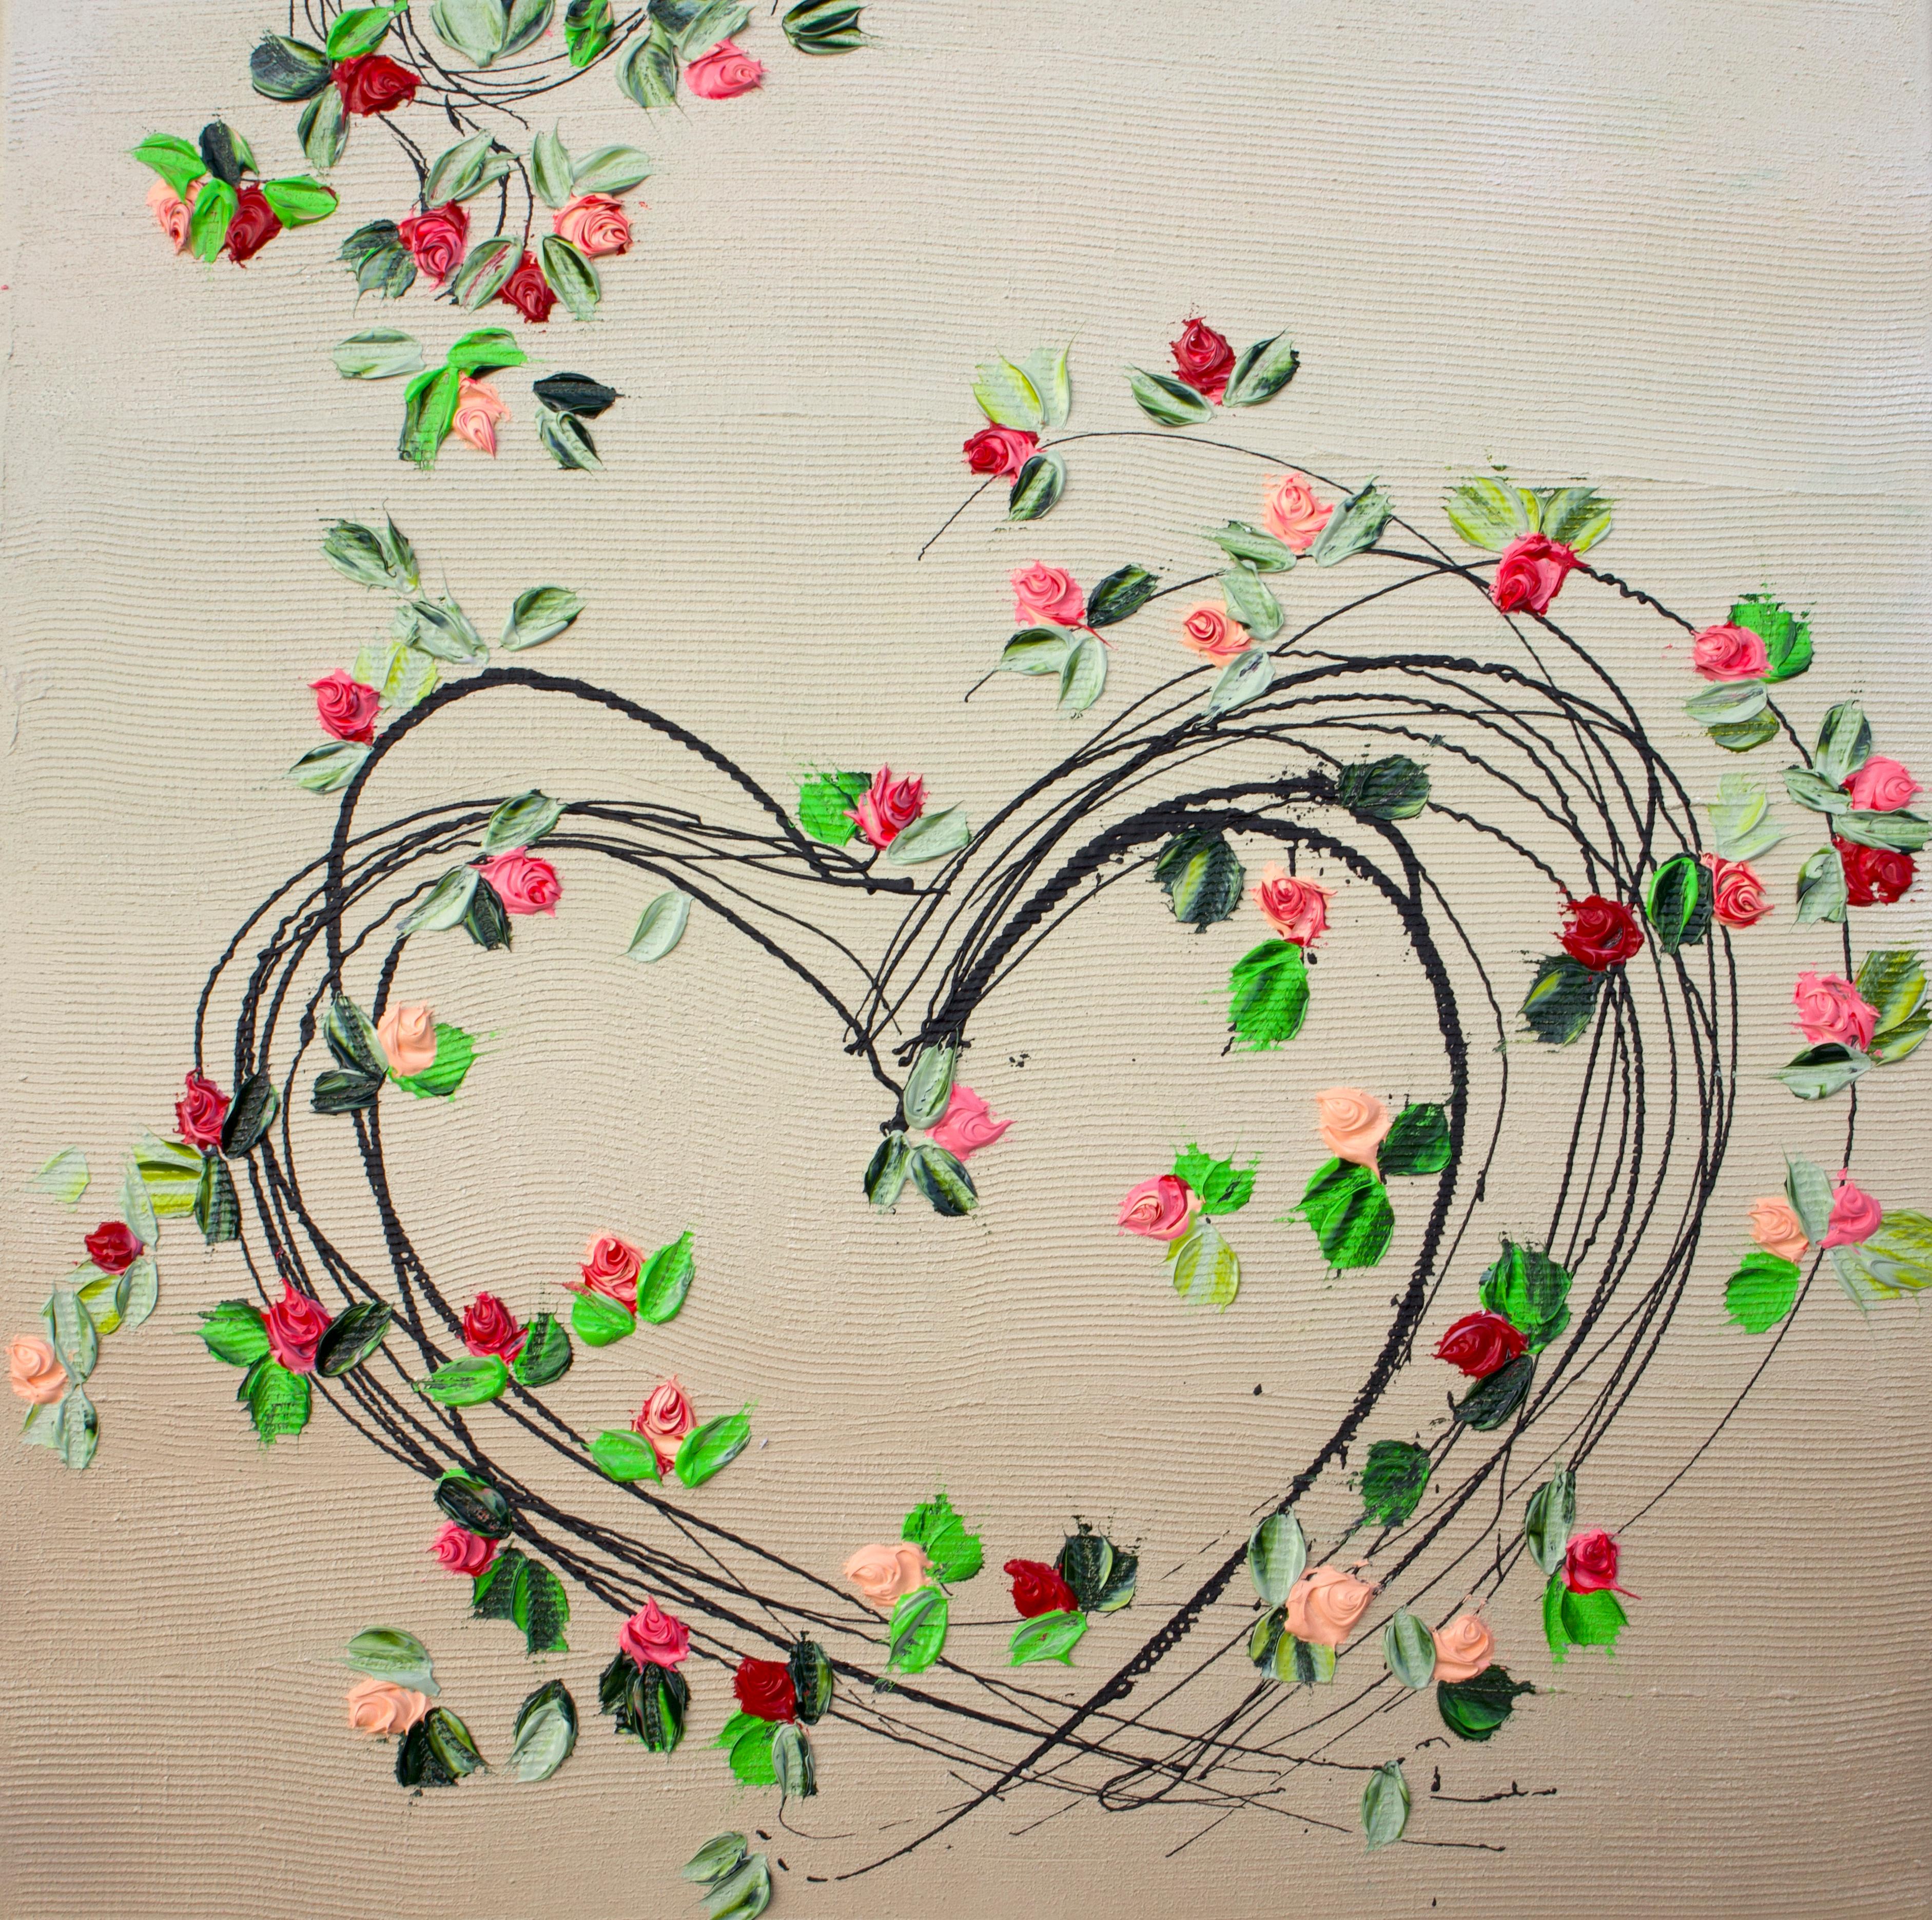 Peinture florale colorée texturée « Blooming Heart » (Cœur en fleurs)